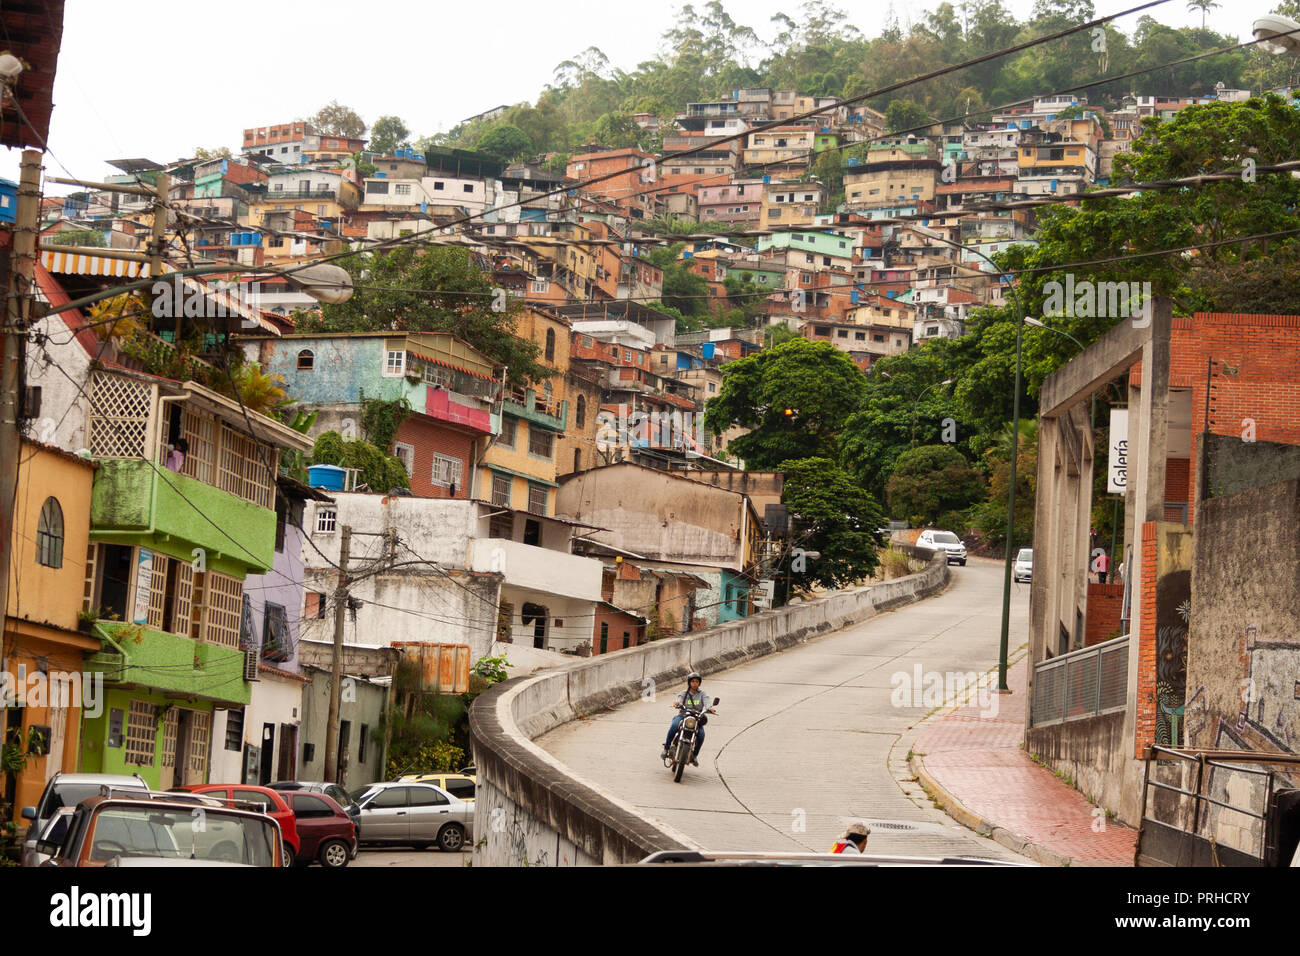 El Hatillo Caracas/Venezuela Etat de Miranda 26/04/2018 L'assainissement des taudis dans les collines. Banque D'Images